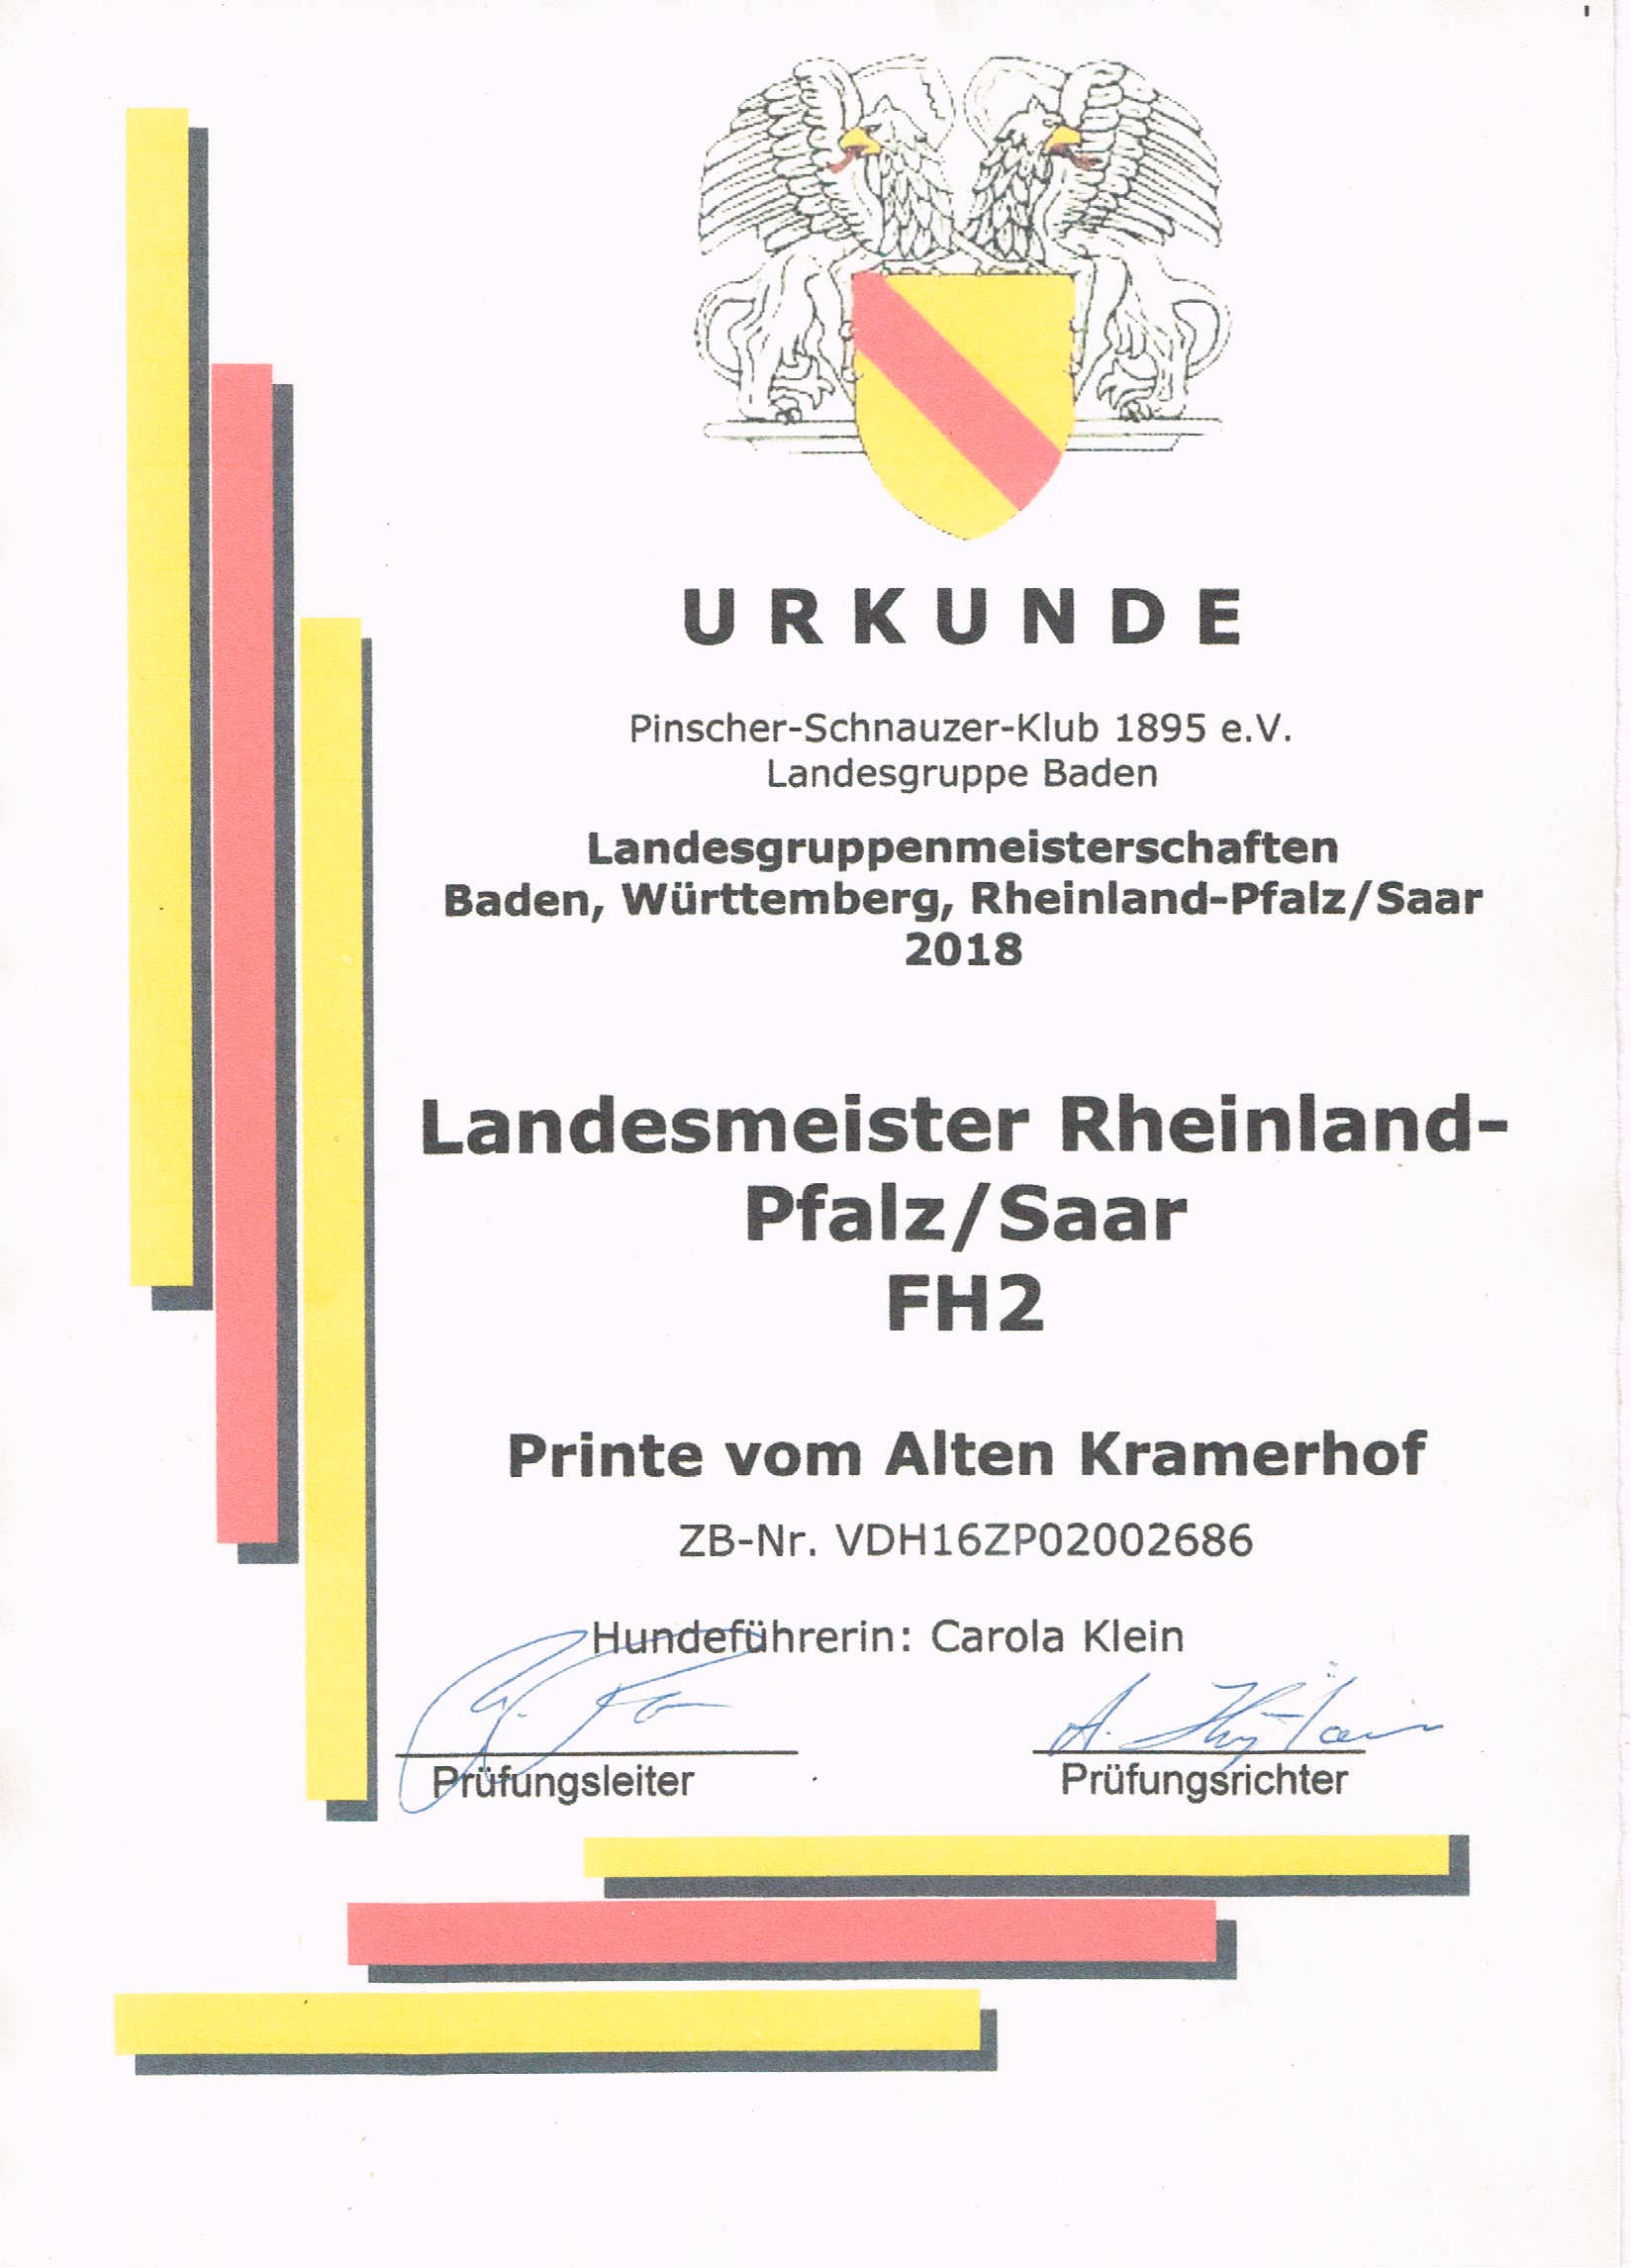 Vítěz Německa Printe vom Alten Kramerhof